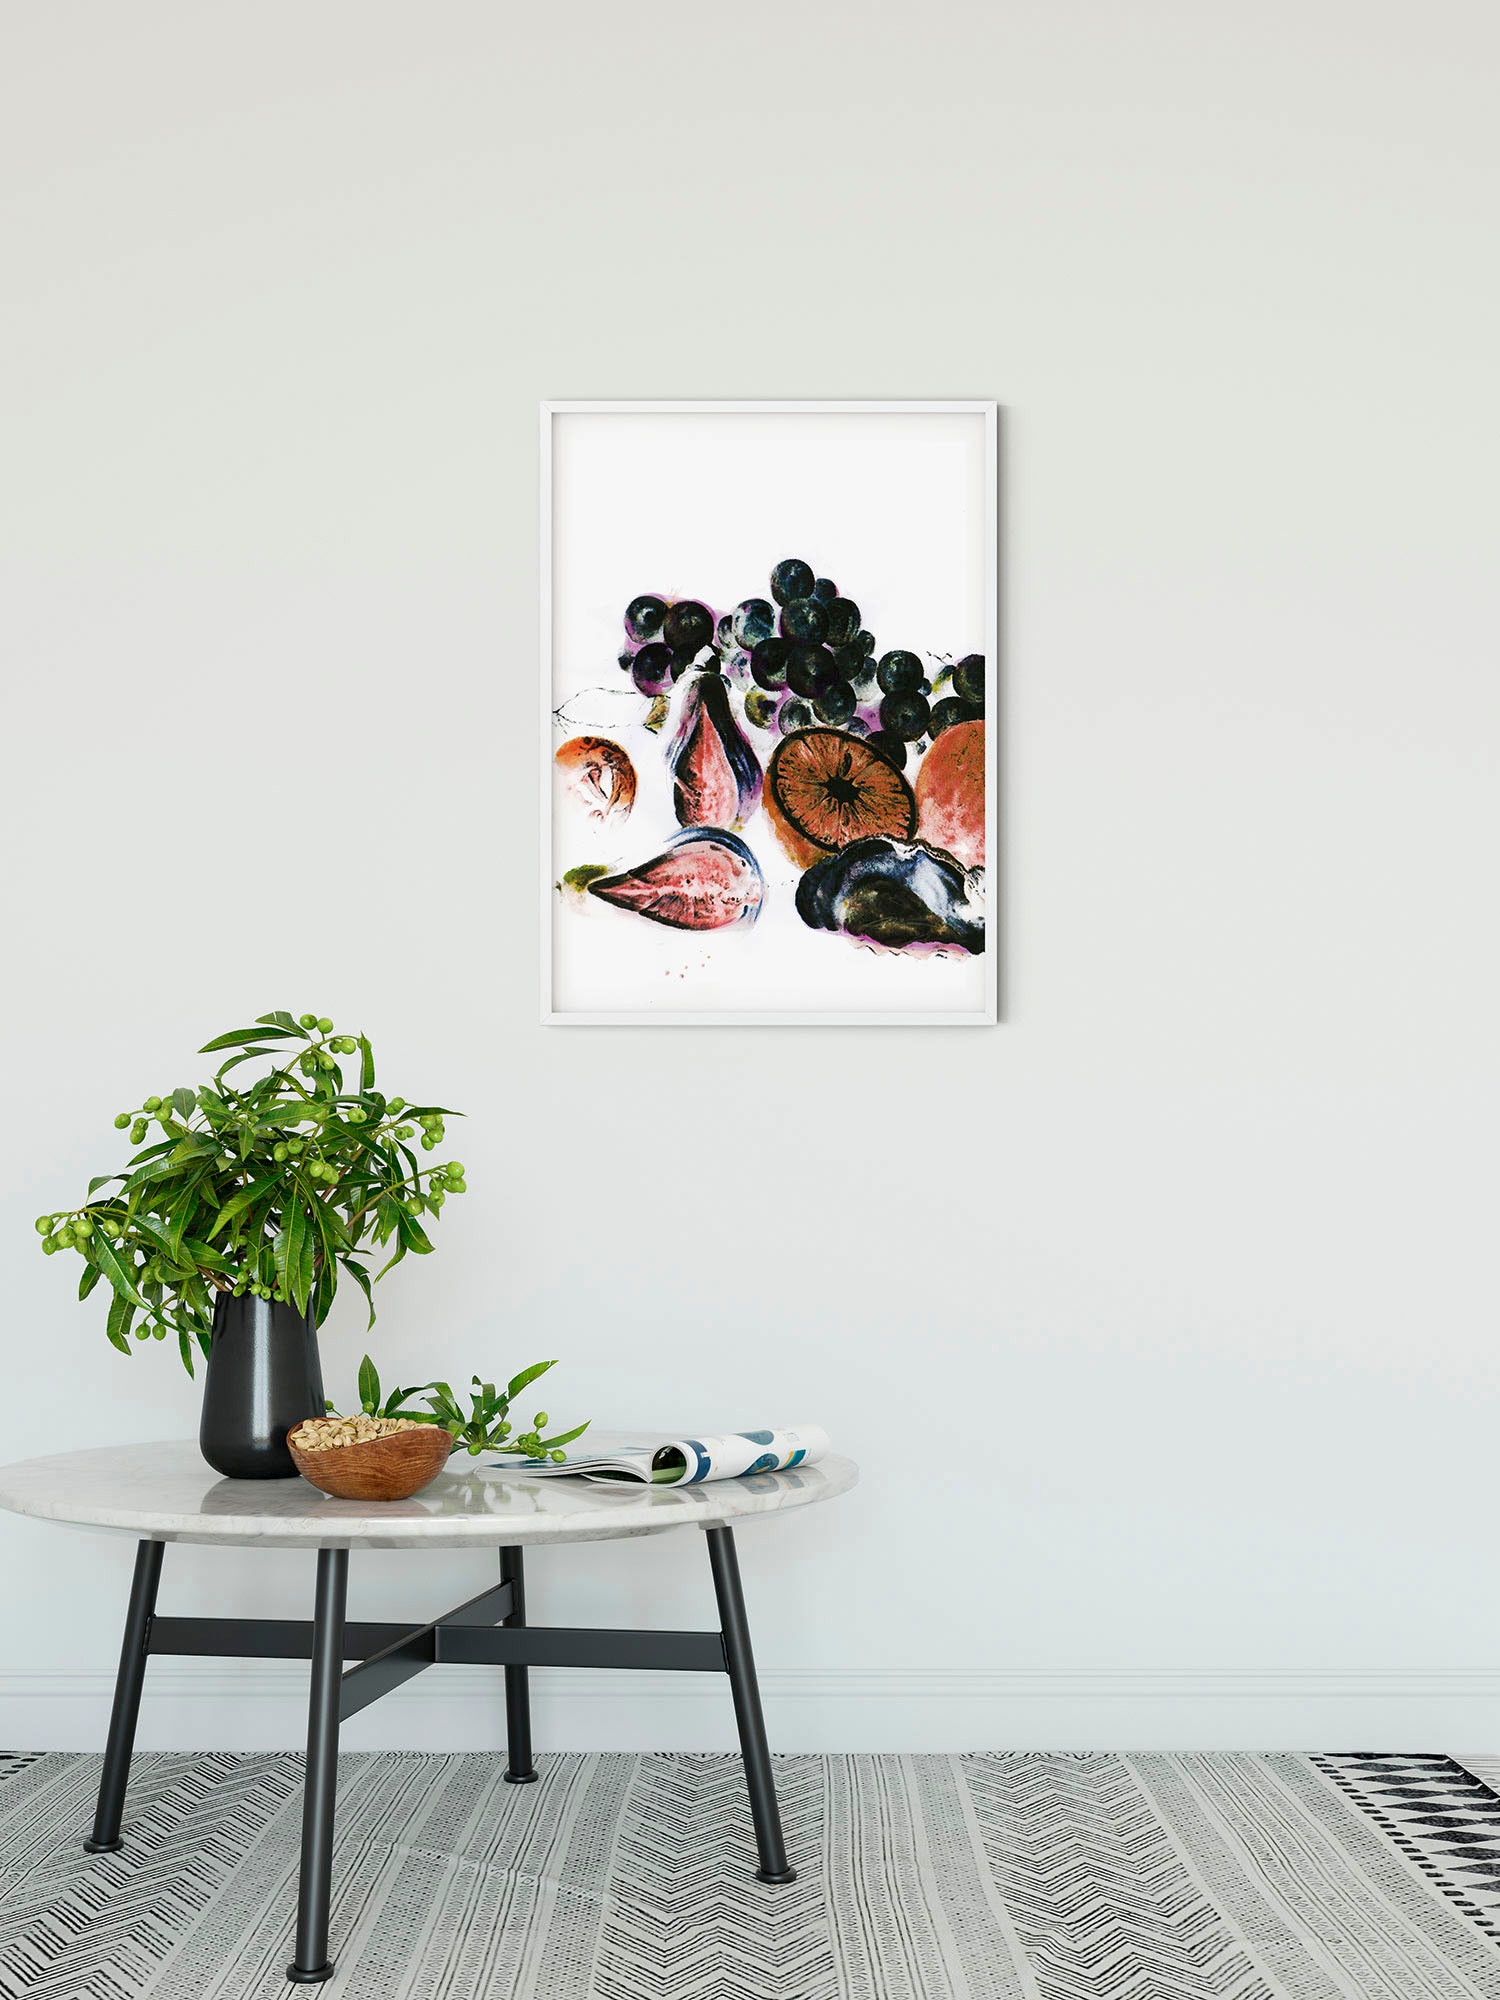 Komar Wandbild »Fruits d'automne«, (1 St.), Deutsches Premium-Poster Fotopapier mit seidenmatter Oberfläche und hoher Lichtbeständigkeit. Für fotorealistische Drucke mit gestochen scharfen Details und hervorragender Farbbrillanz.